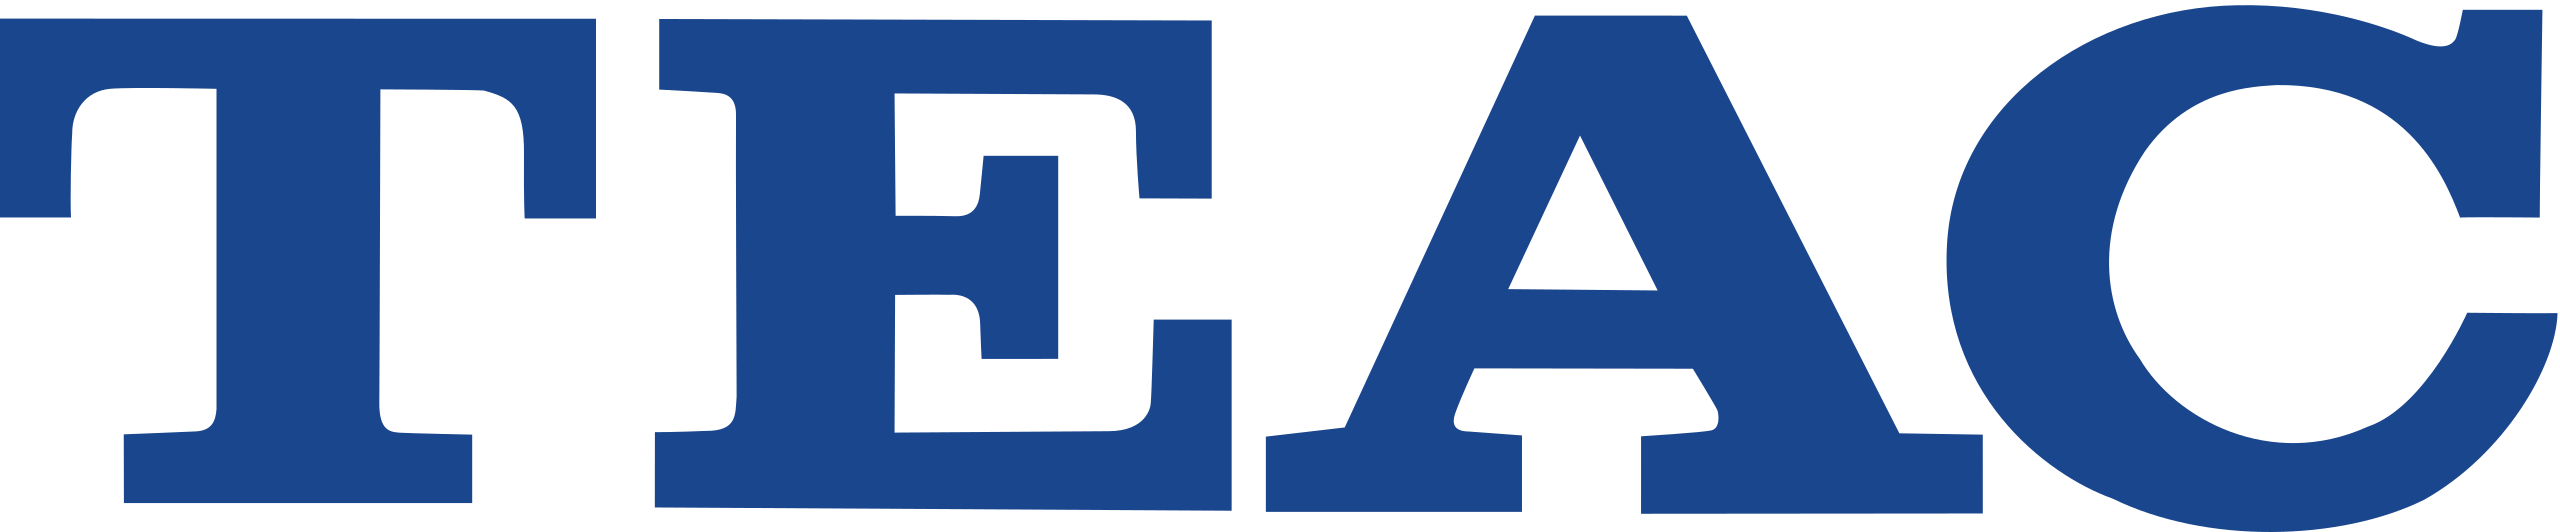 TEAC_(logo).svg